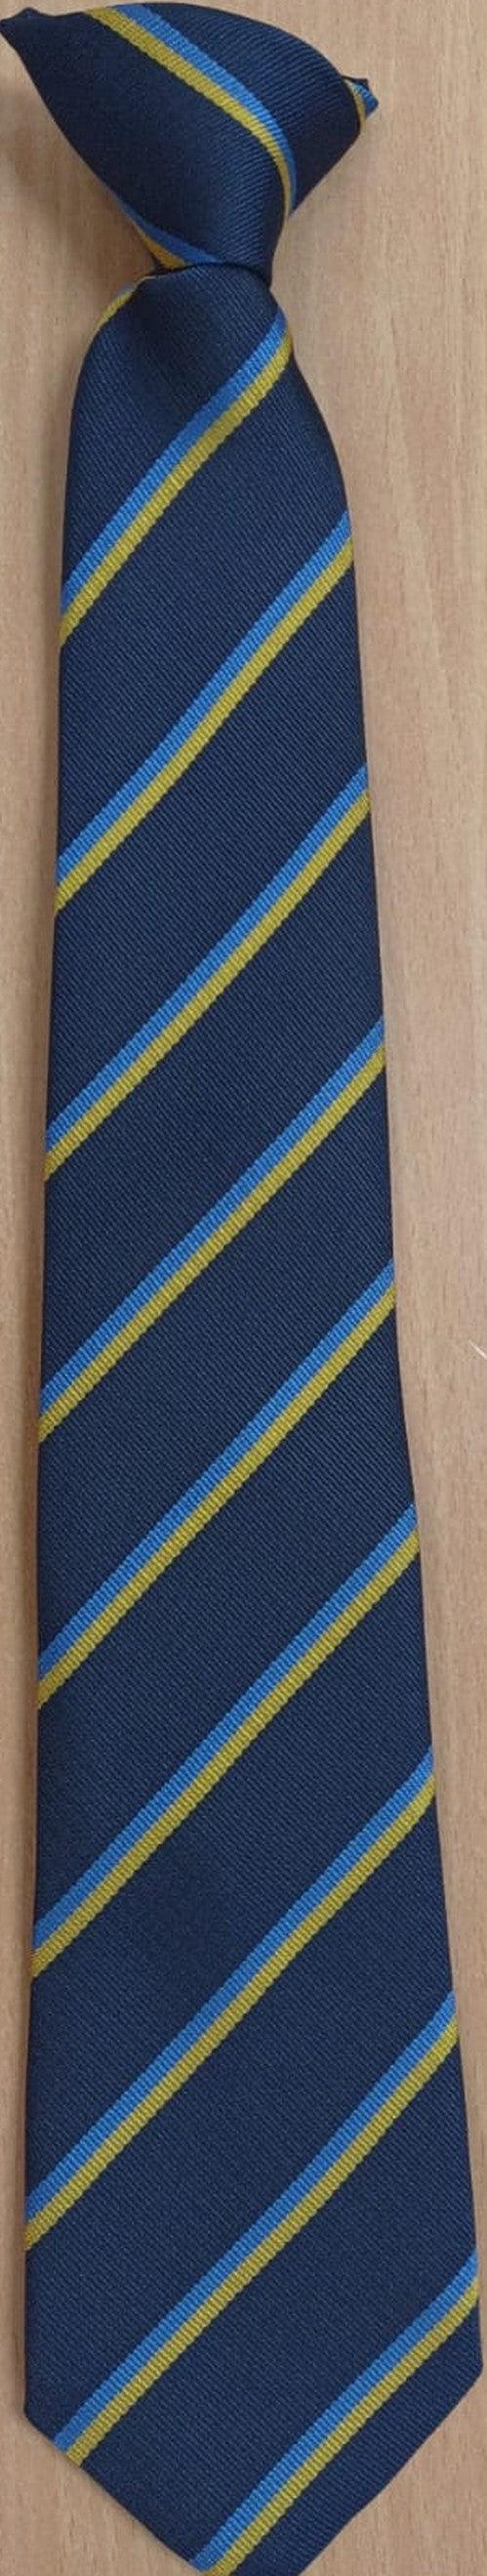 The Deanes - Clip-on (Official) School Tie - Schoolwear Centres | School Uniform Centres